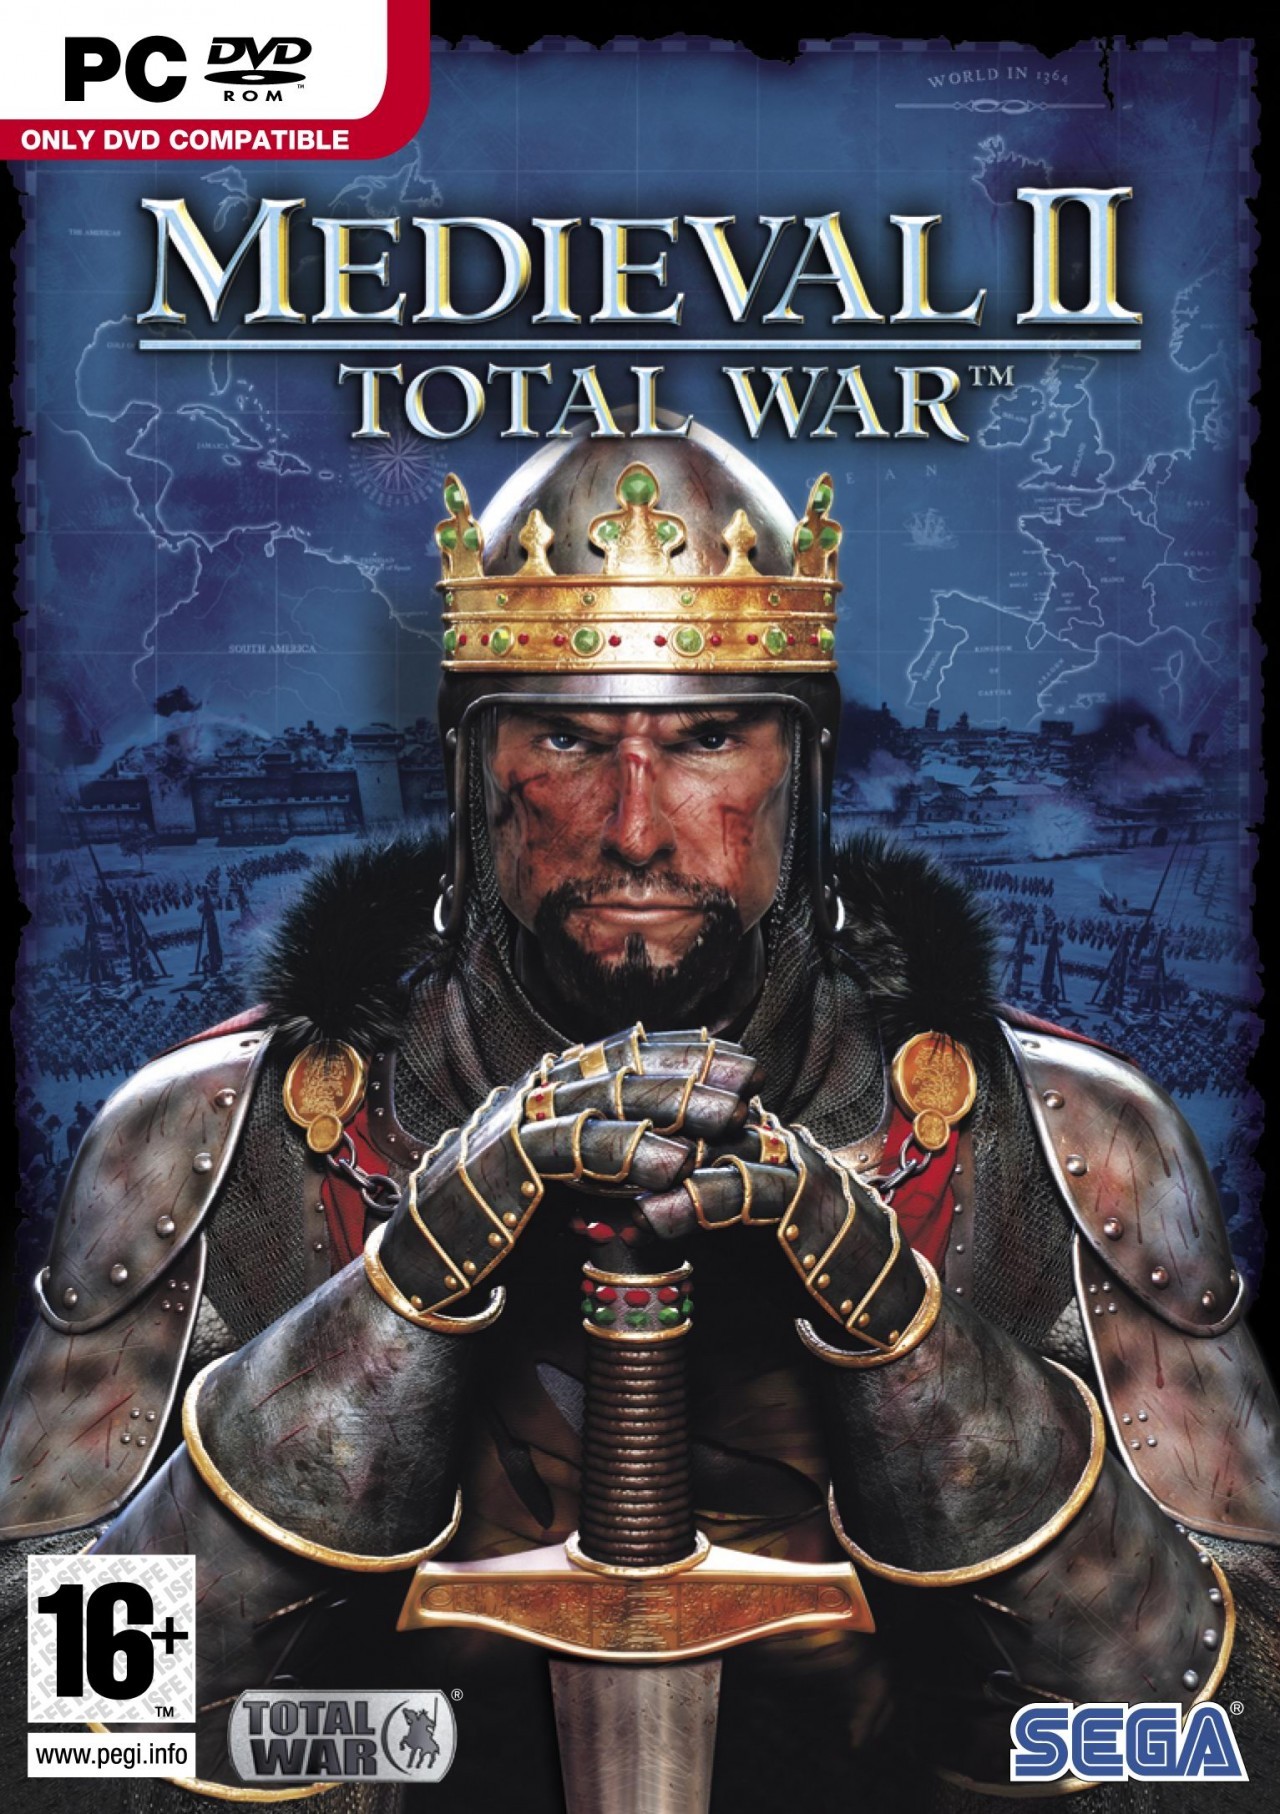 medieval total war 2 download